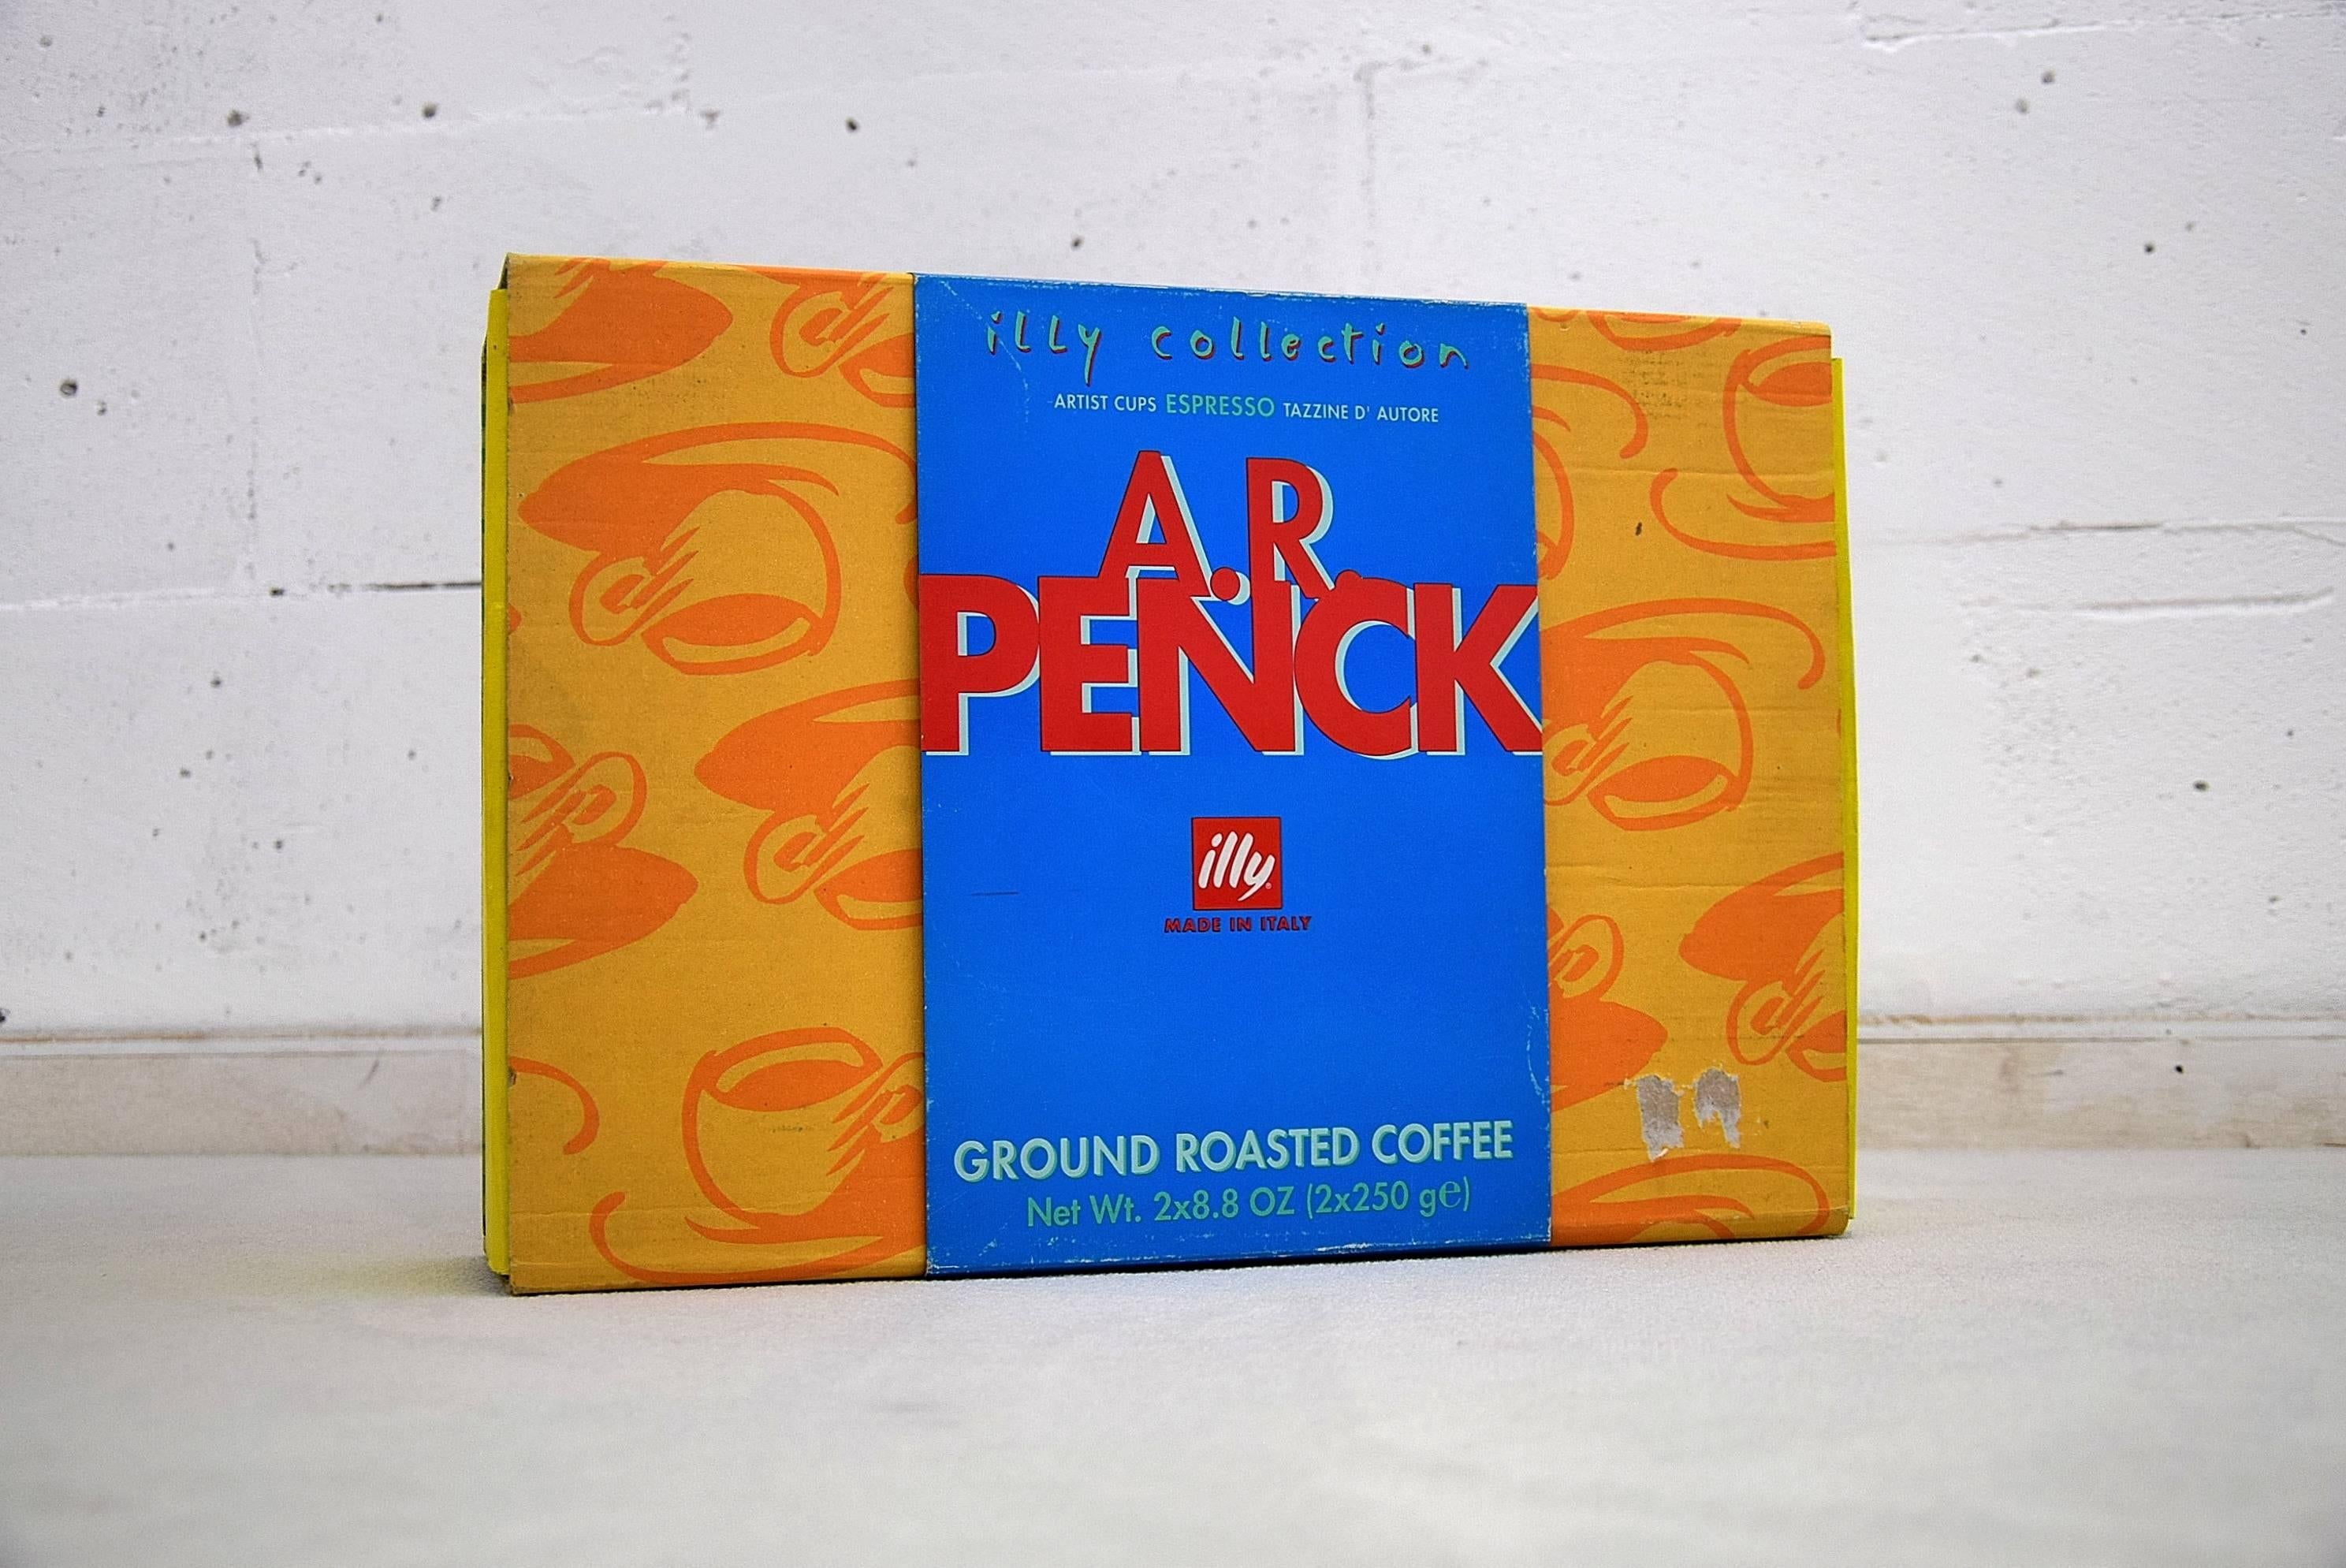 Espressotassen von A.R. Penck, 1997

Ein schönes und sehr seltenes Set von Espressotassen, entworfen von A.R. Penck im Jahr 1997 für die Illy-Kollektion.

Das Set ist neu und wird in der Originalverpackung ohne den Kaffee geliefert.